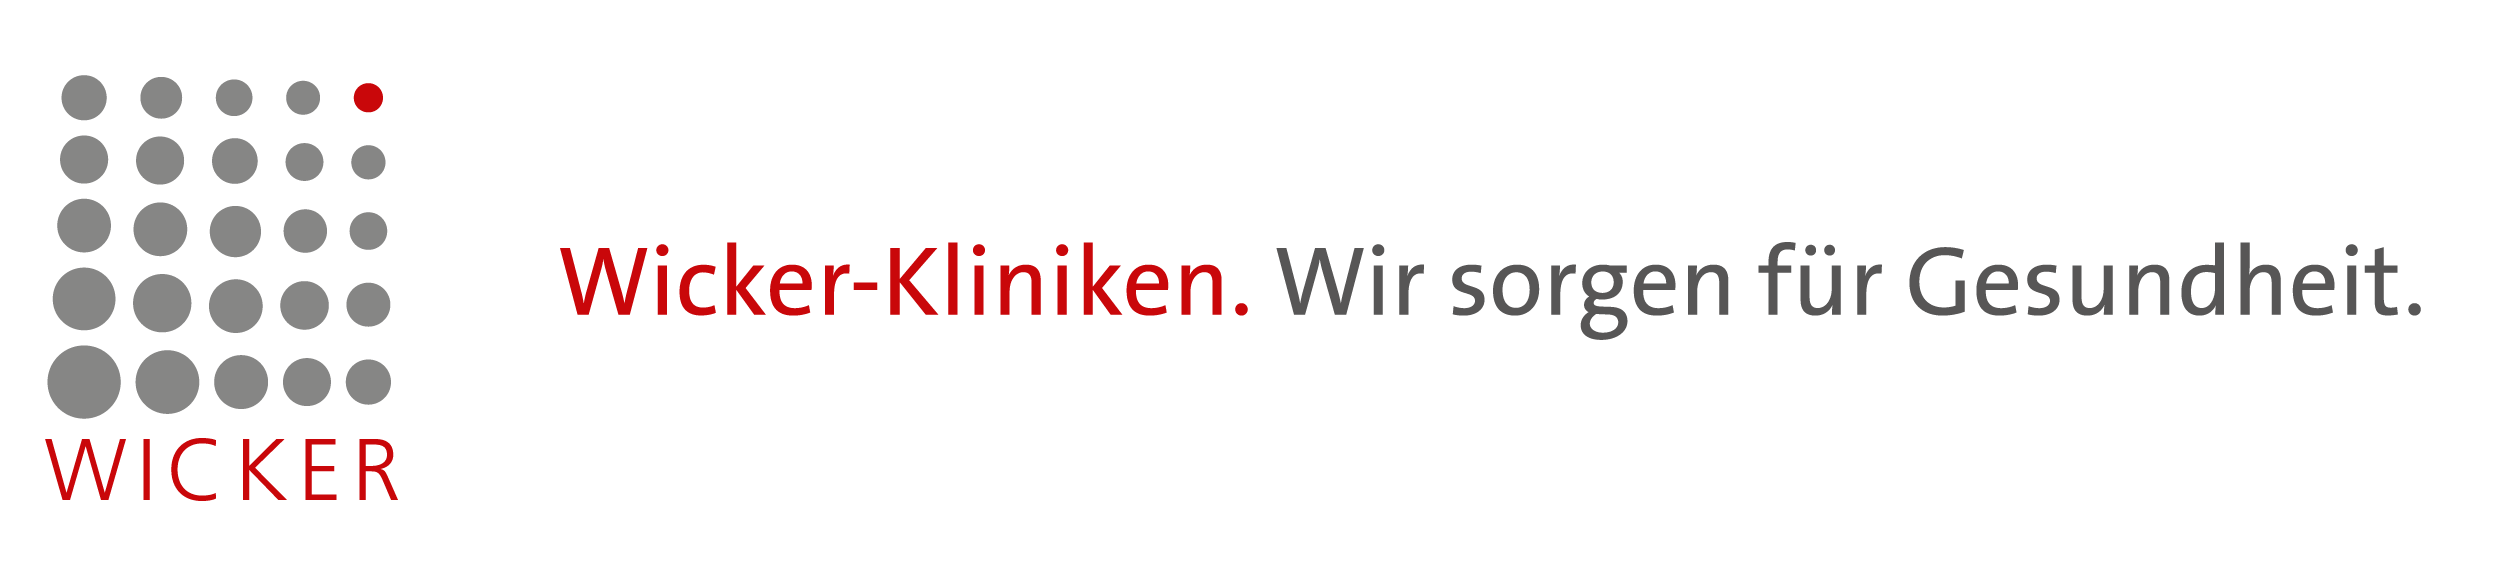 WICKER_Logo-mit-Claim_ab-2018-03_RGB